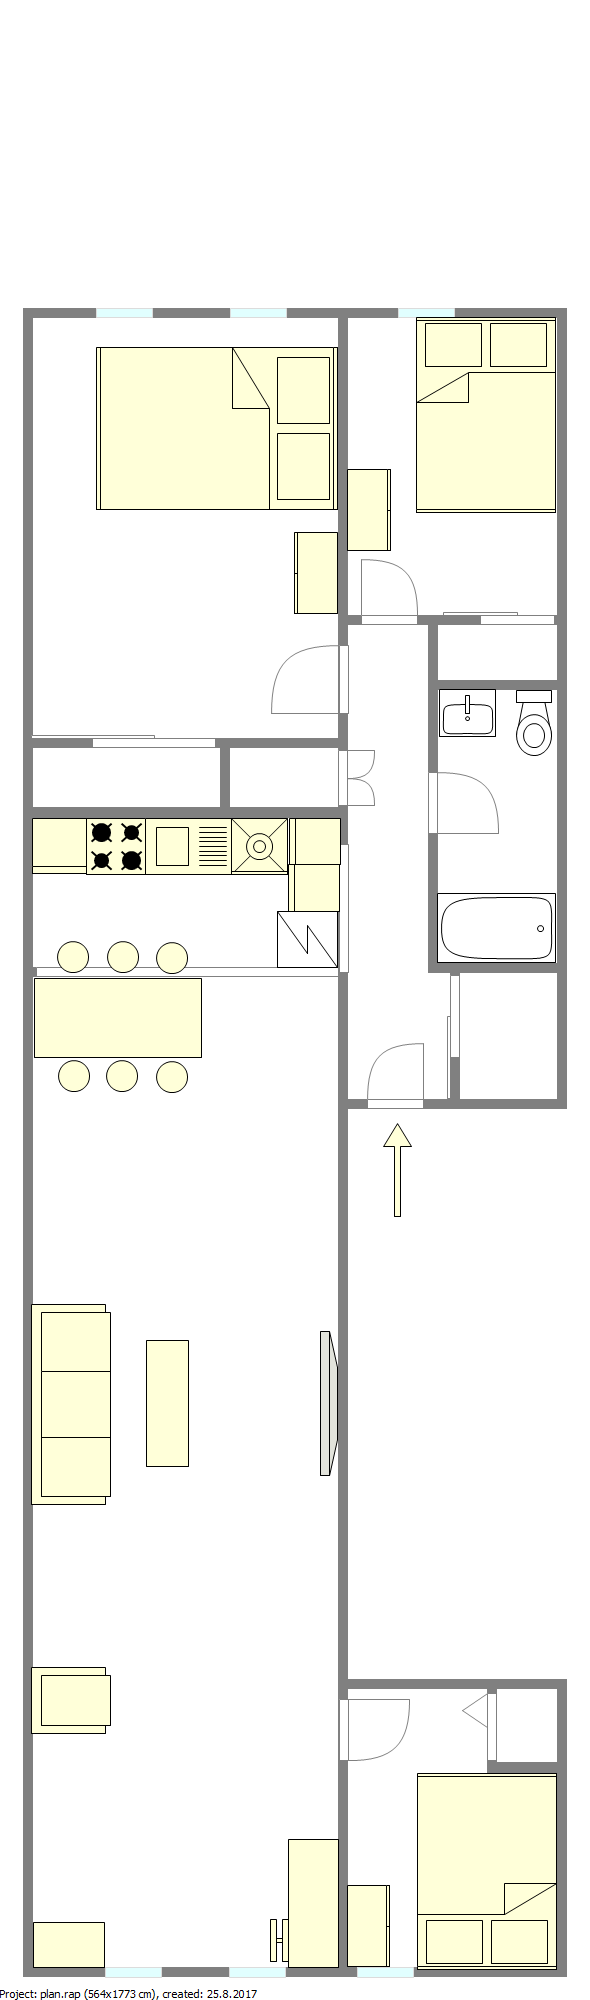 Wohnung Astoria - Interaktiven Plan